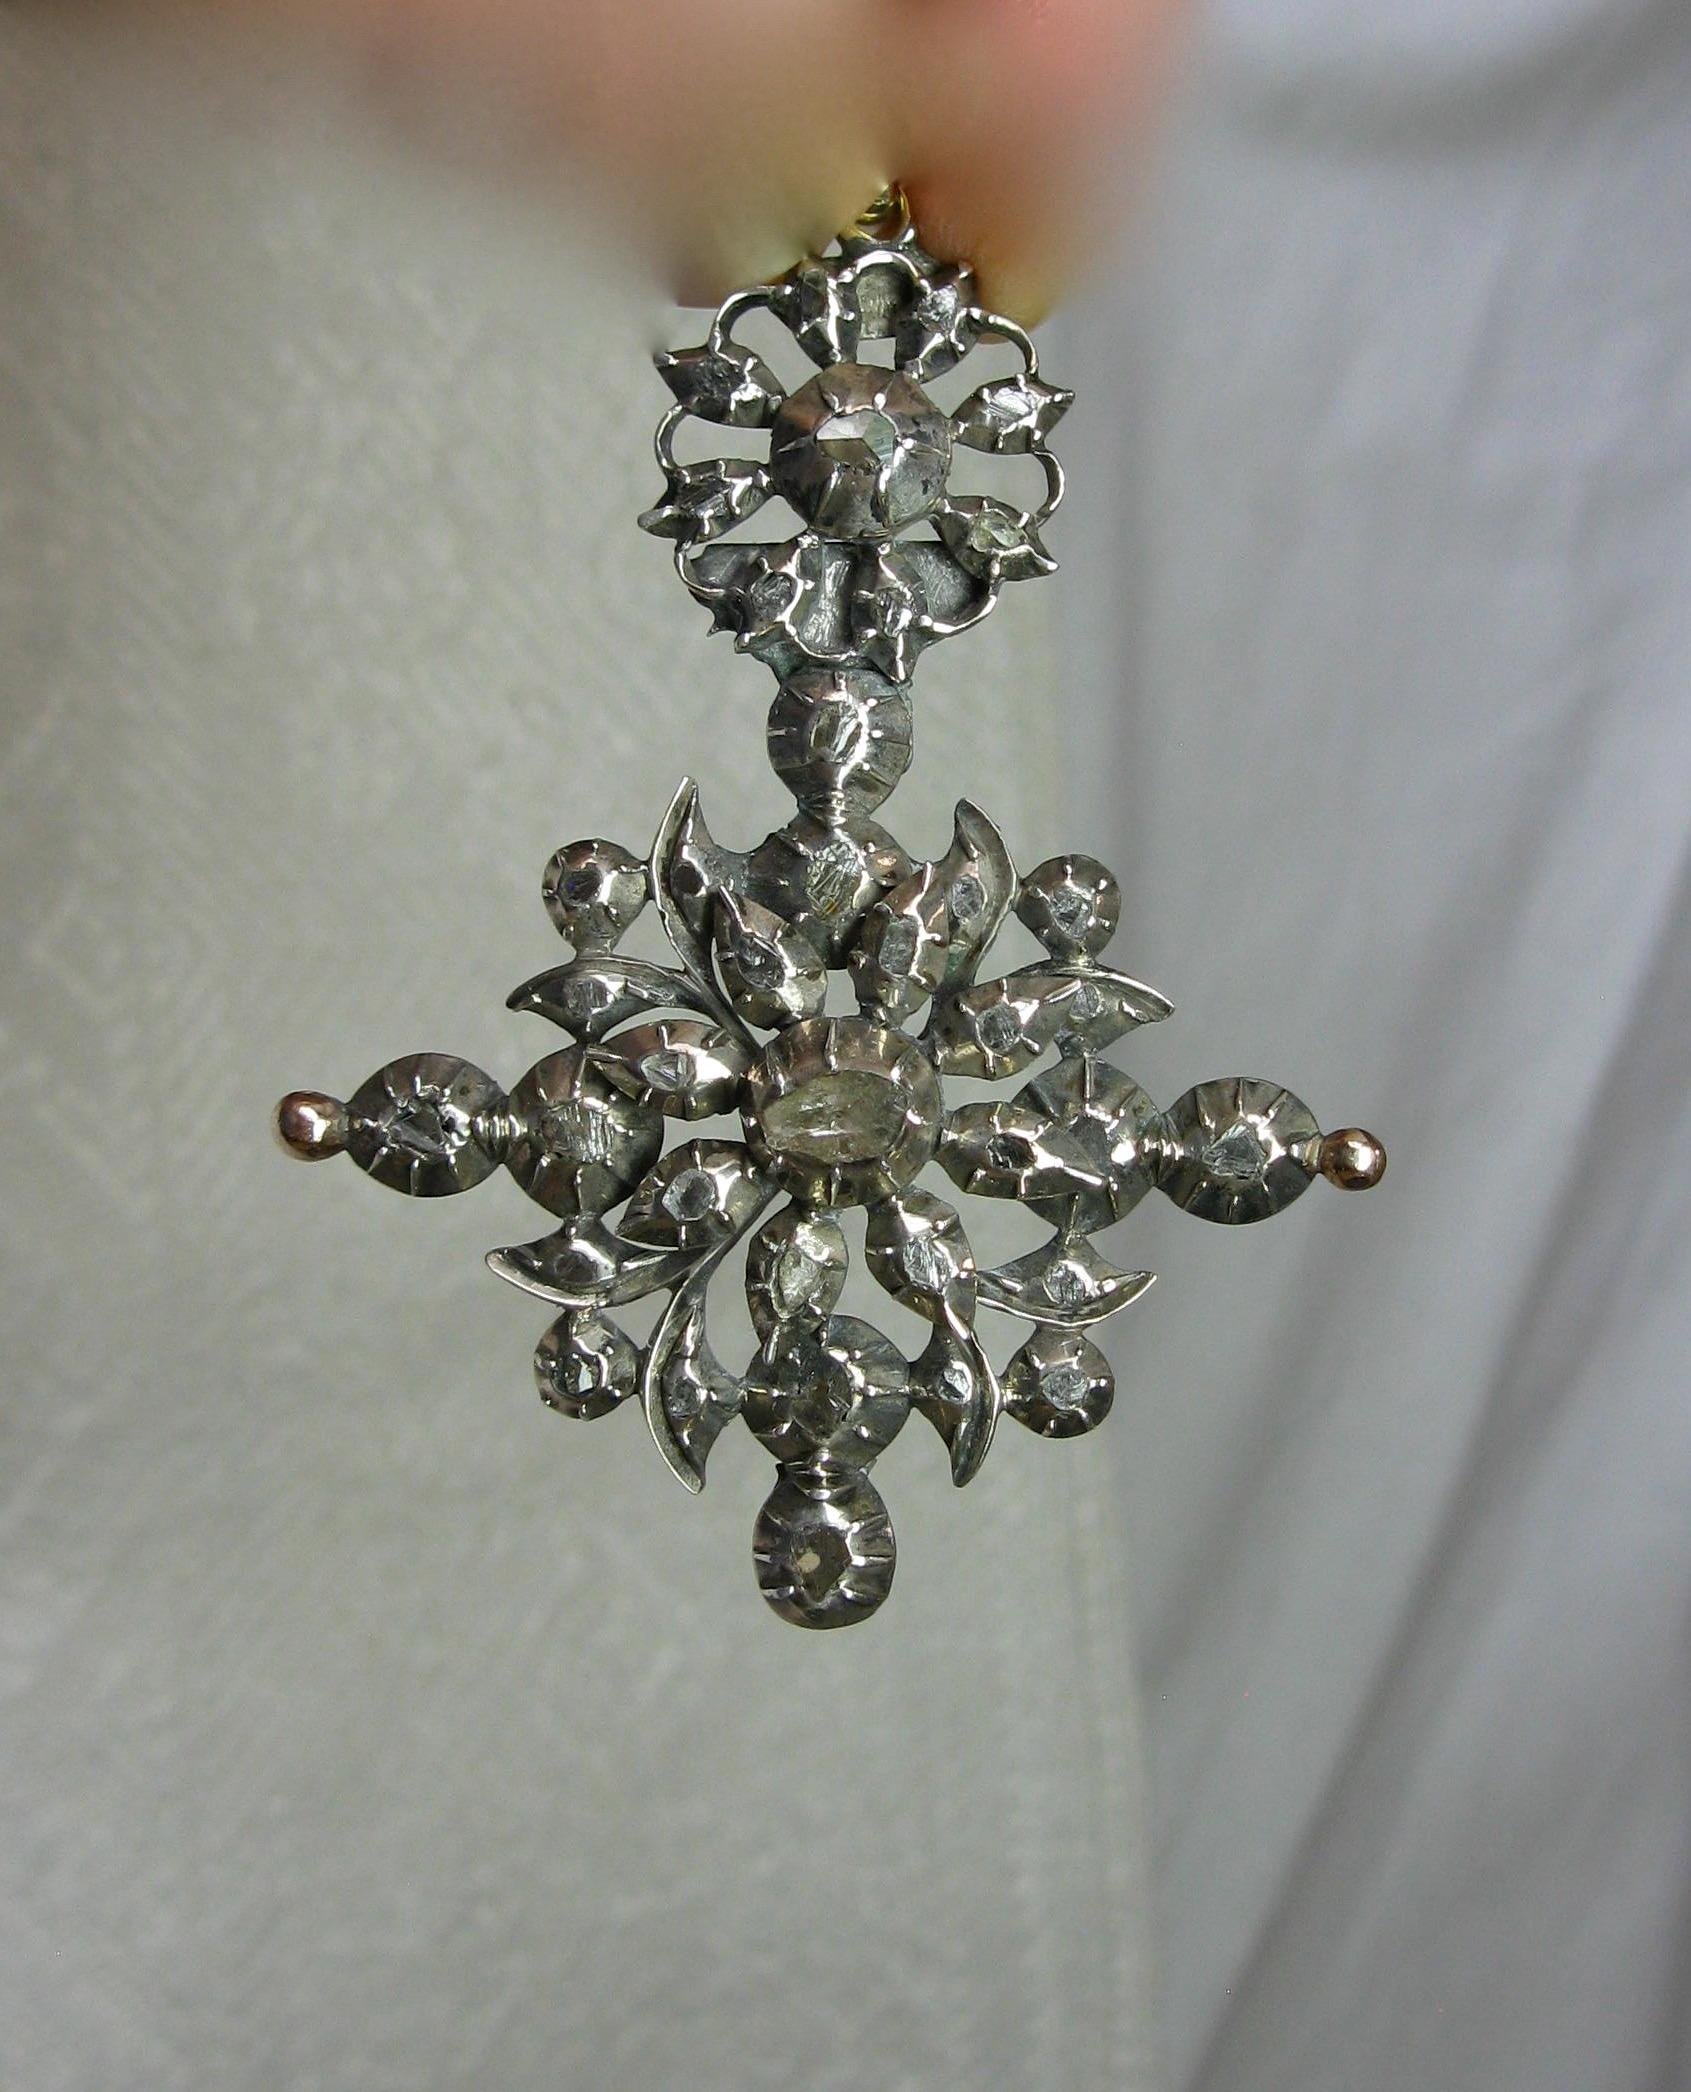 Dies ist eine seltene Museum Qualität frühen Rose Cut Diamond Anhänger aus der georgischen Ära mit einer Fülle von antiken Rose Cut Diamanten in Silber auf 14 Karat Gold, wie es der Brauch der Zeit.  Der Anhänger von großer Schönheit und aus den